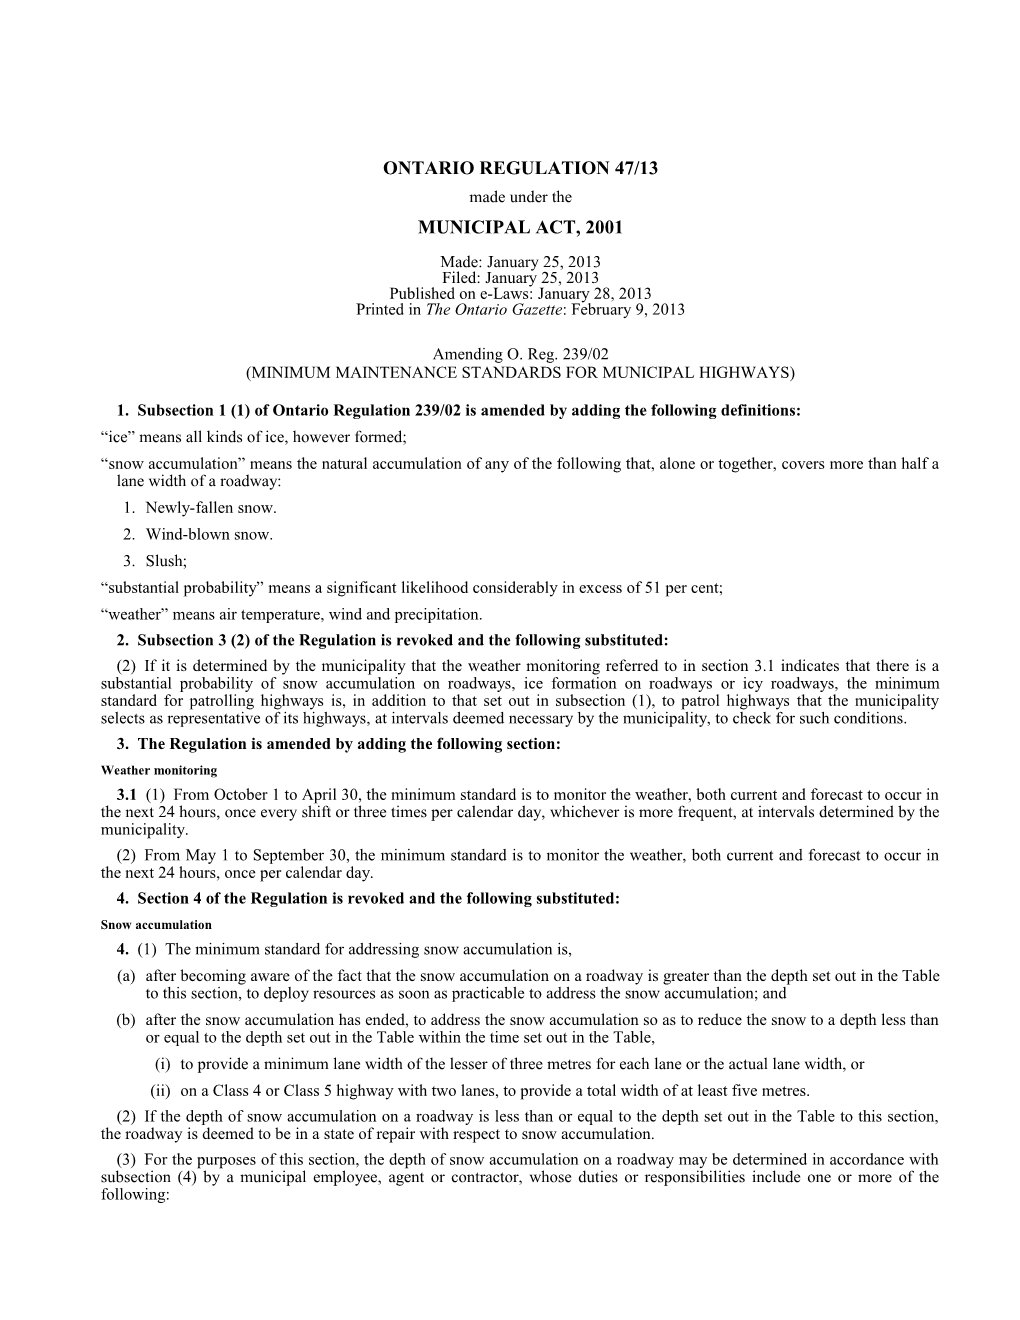 MUNICIPAL ACT, 2001 - O. Reg. 47/13